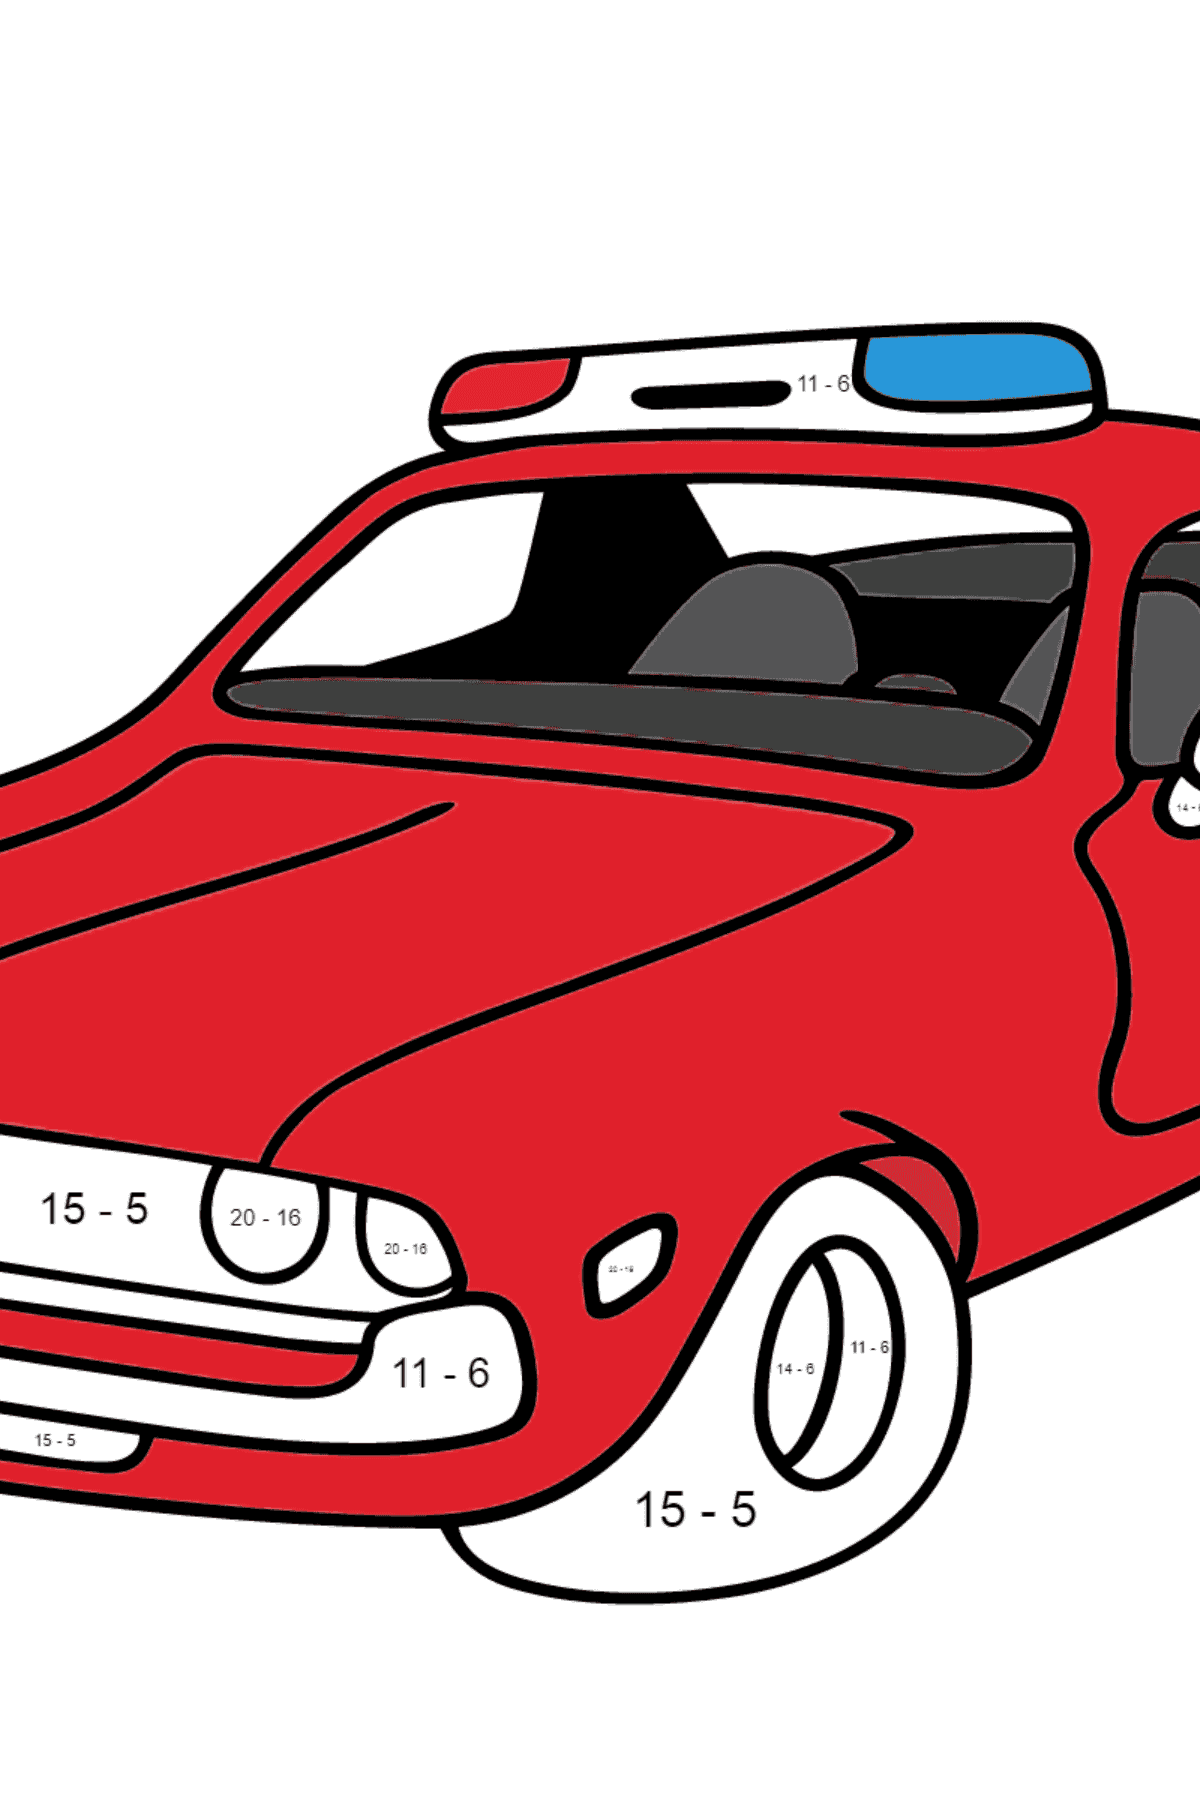 Ausmalbild - Ein rotes Polizeiauto - Mathe Ausmalbilder - Subtraktion für Kinder